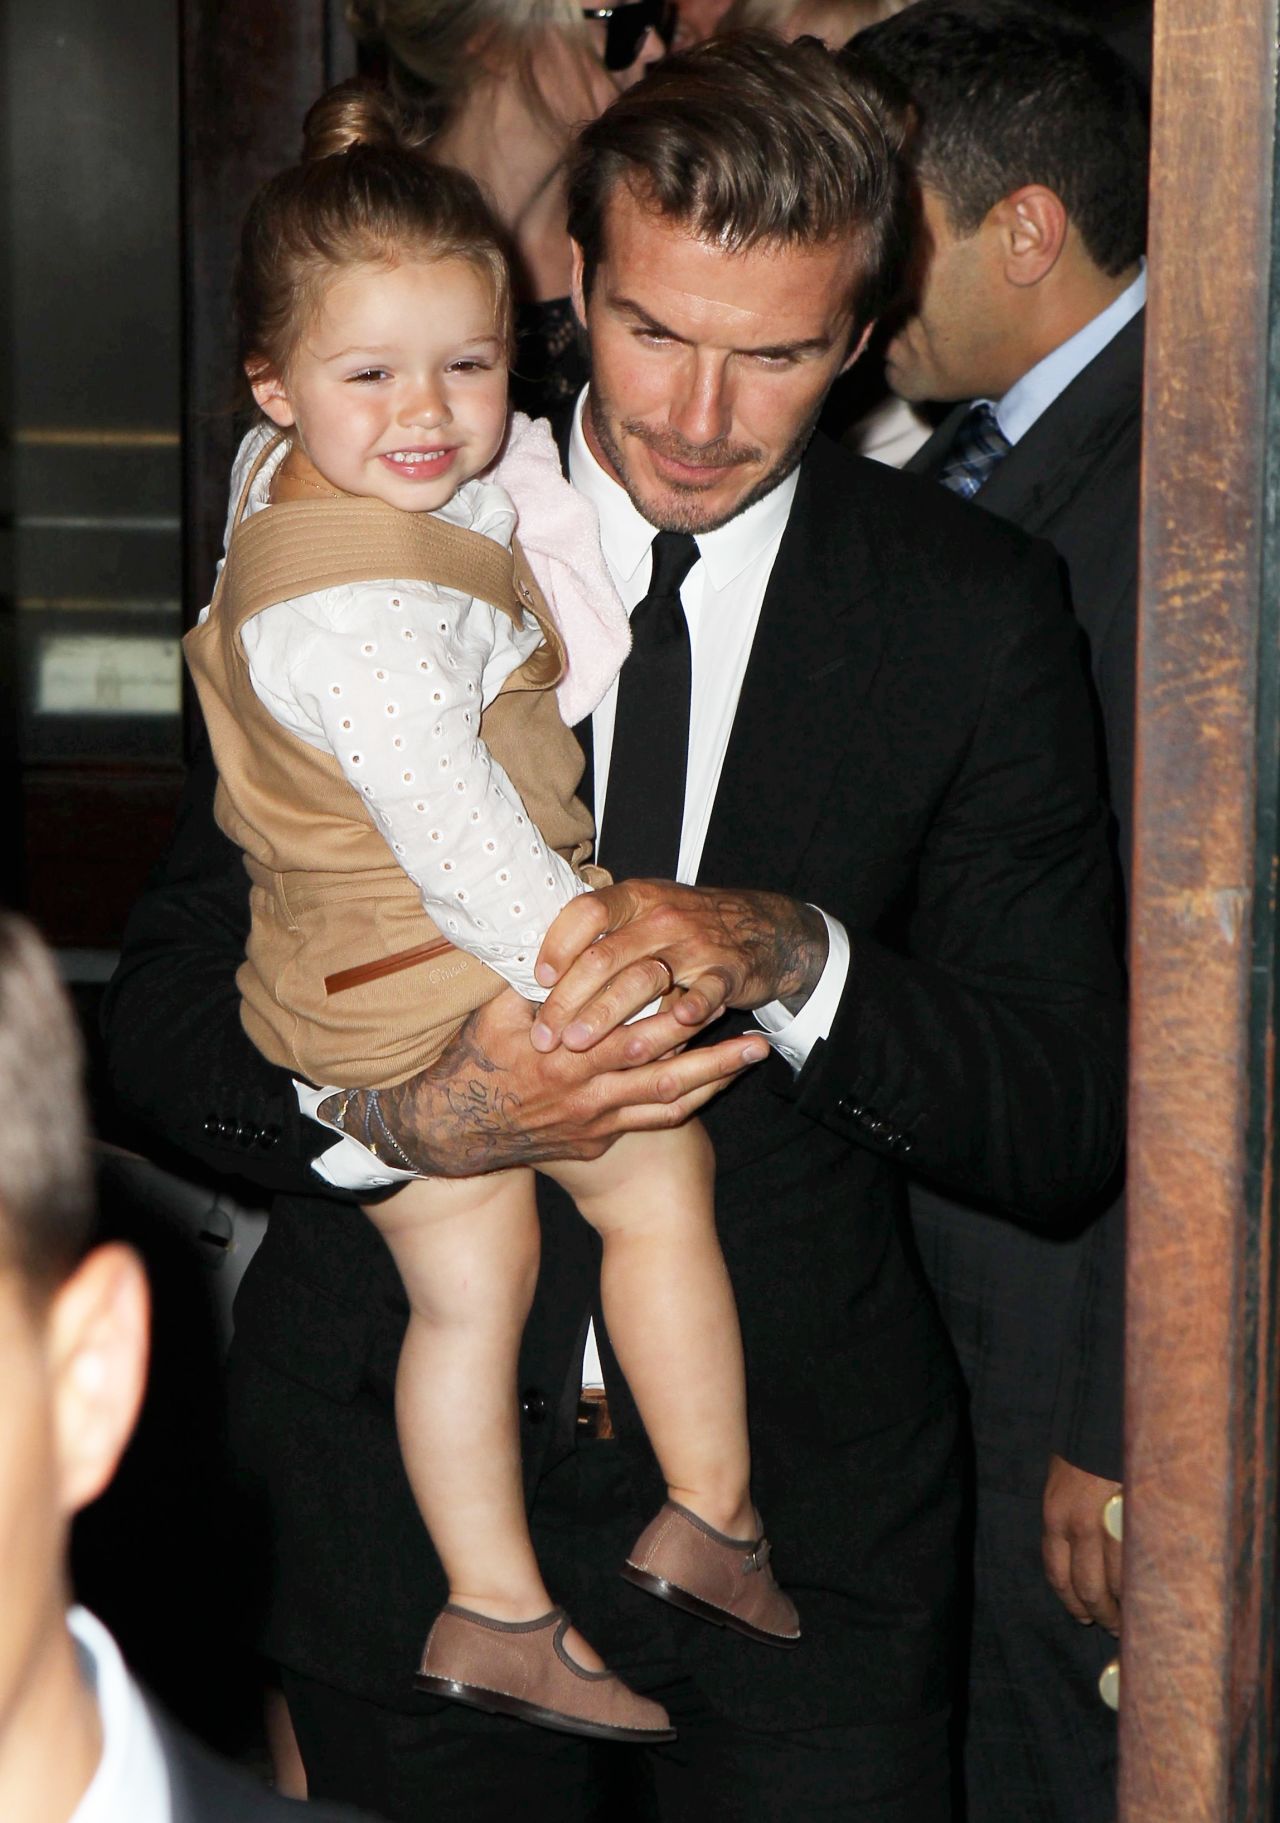 David Beckham carries smiling daughter Harper through the New York fashion week crowd on September 8.